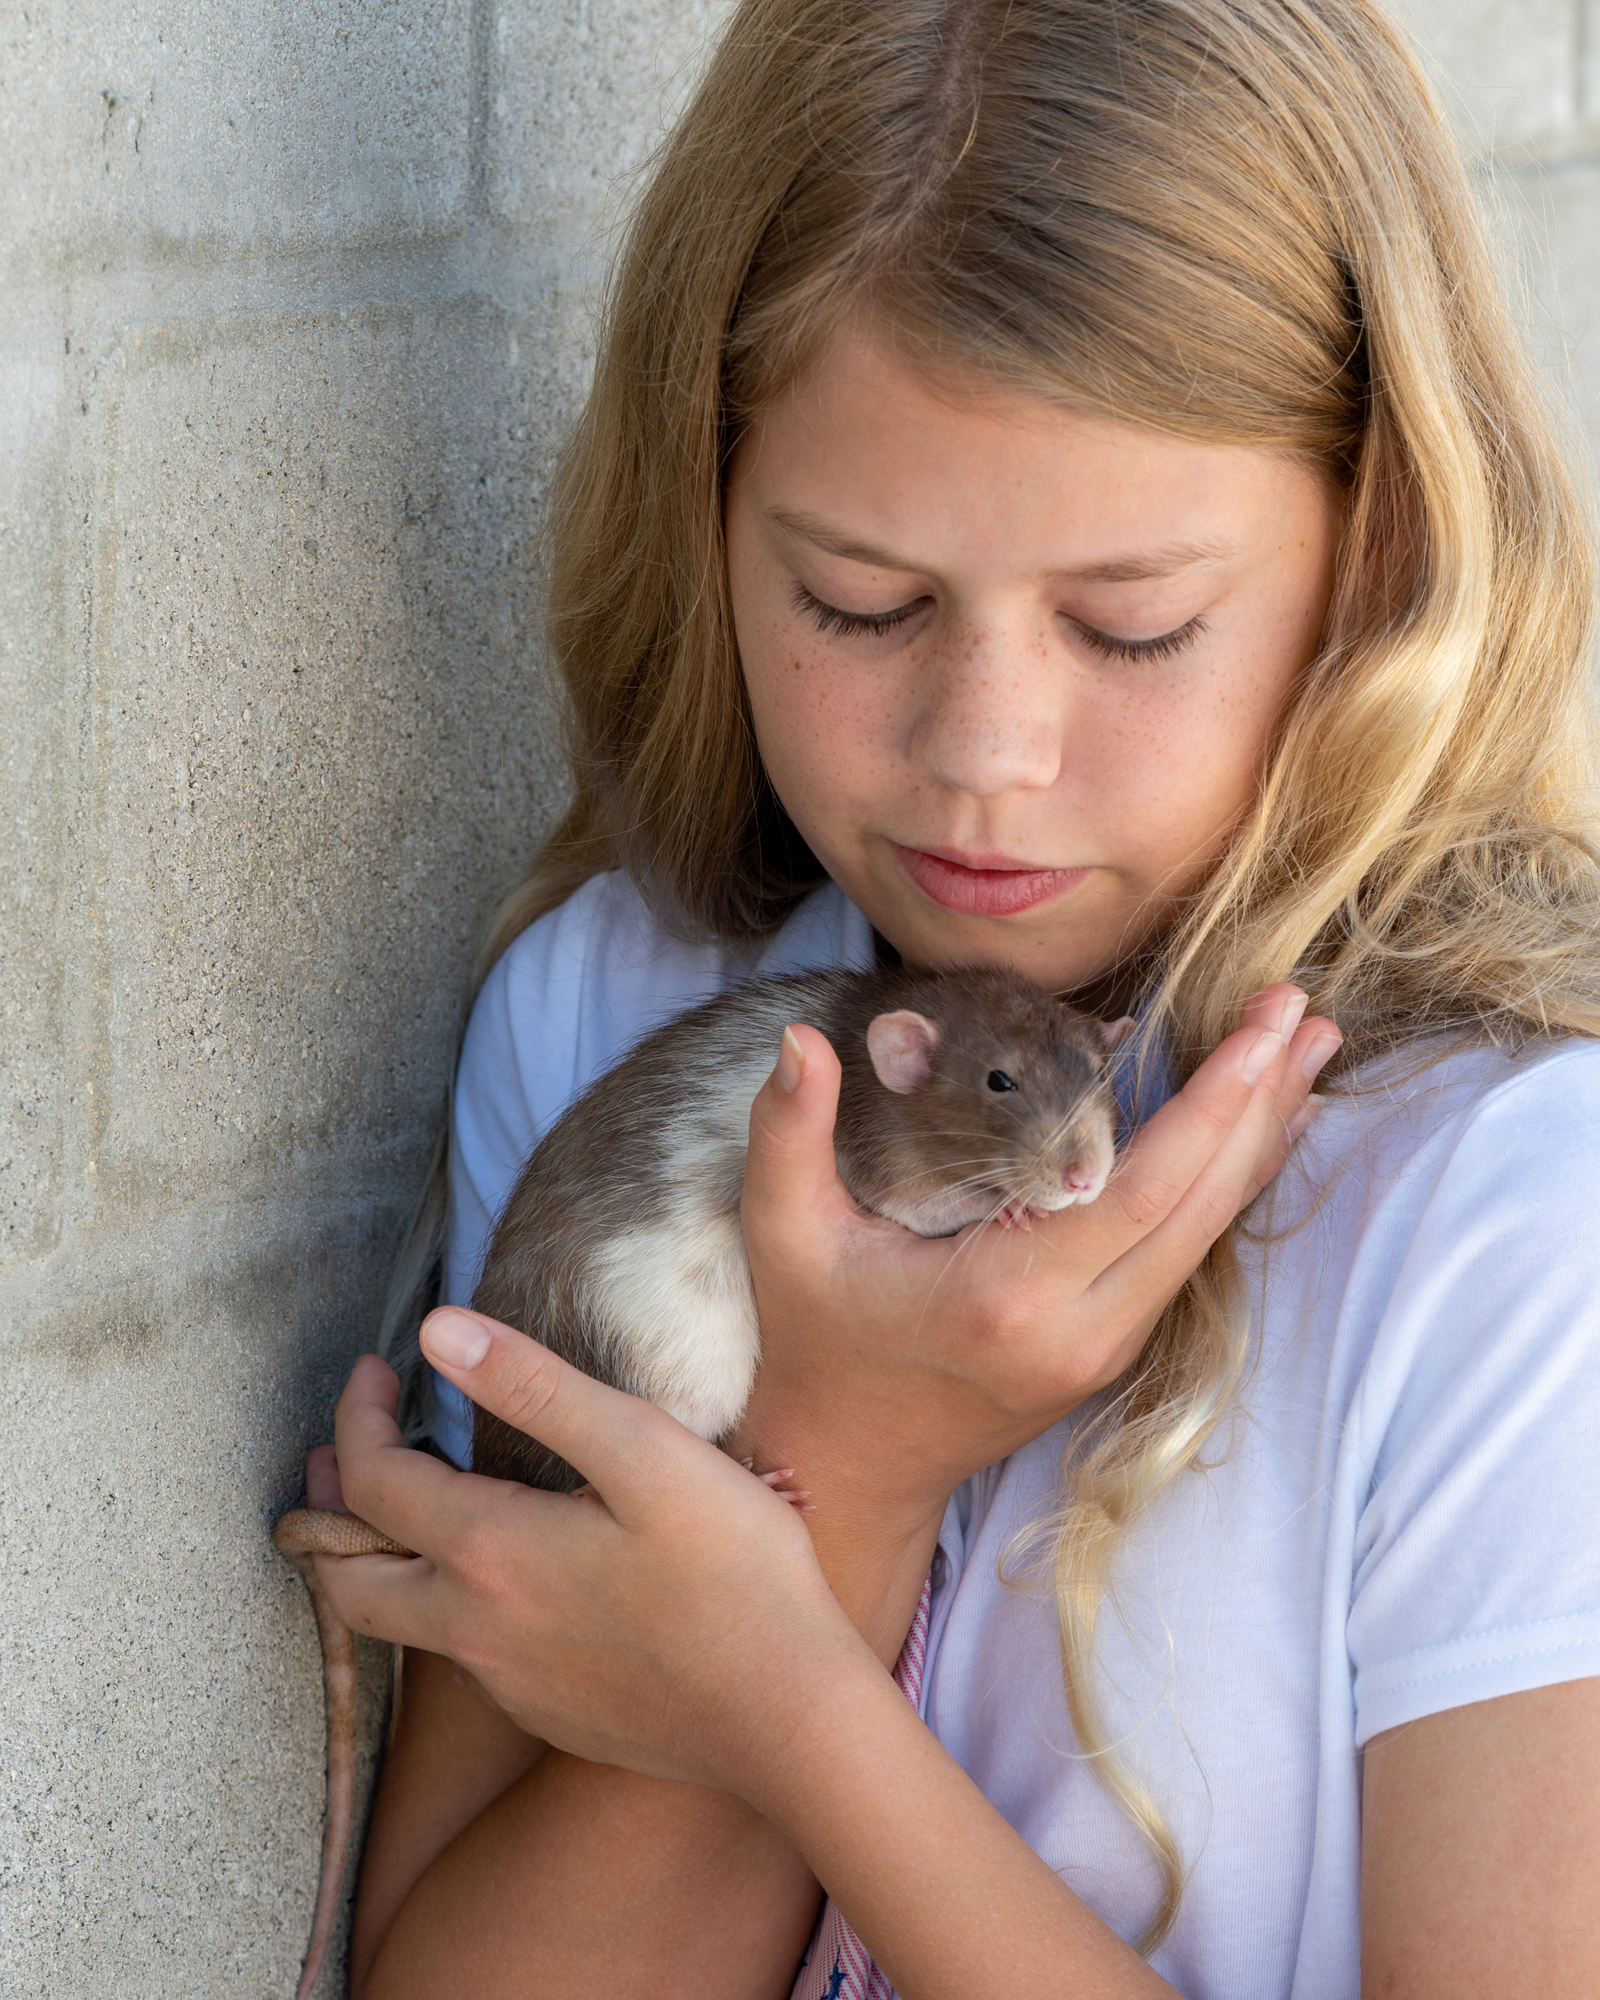 Lily Wojtkowski’s pet rats inspire her art. (Photo by Lori Sax)